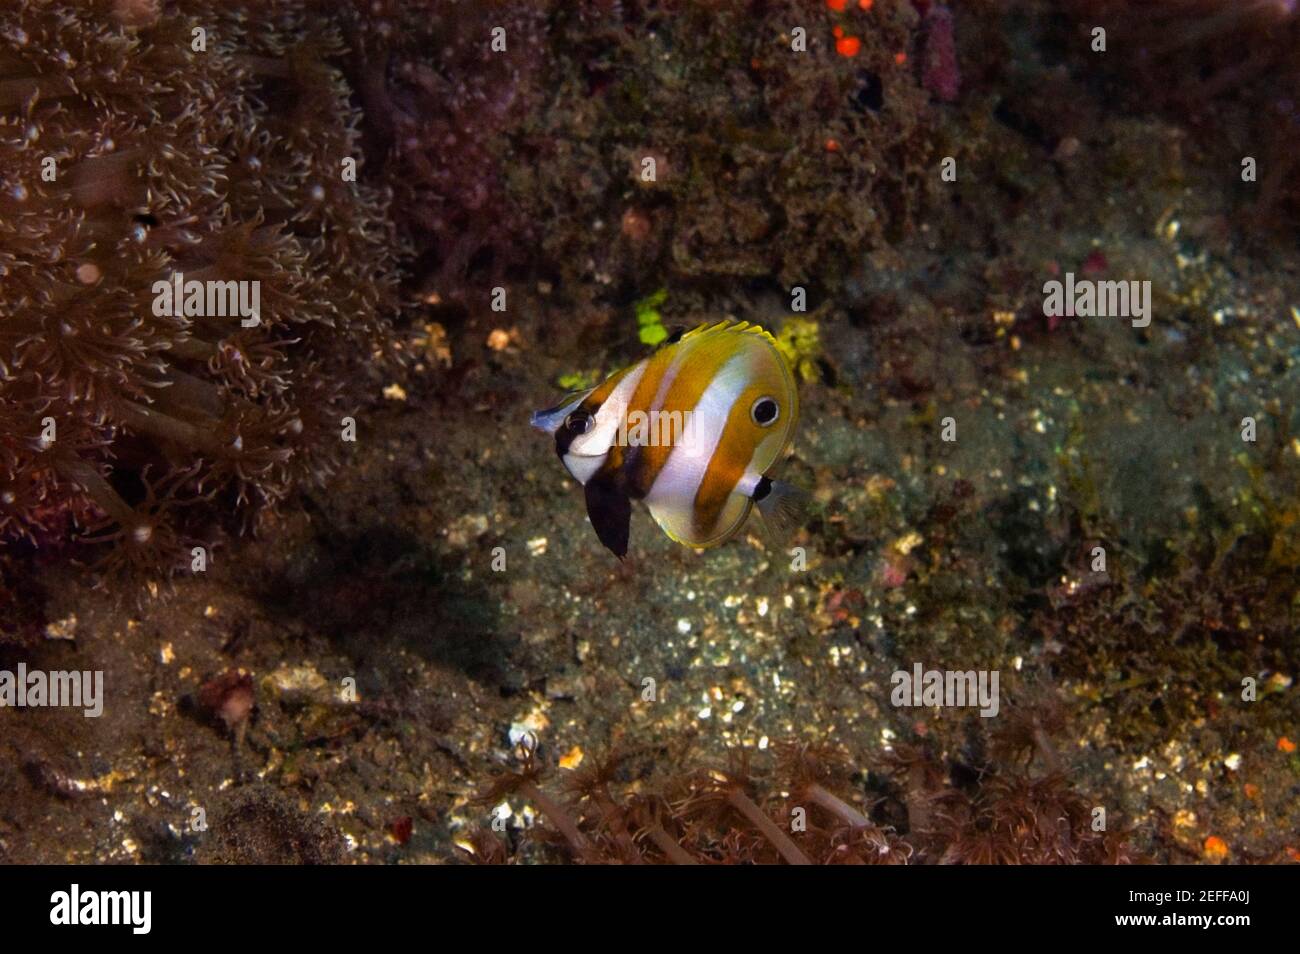 Orange-banded coralfish swimming underwater, Papua New Guinea Stock Photo